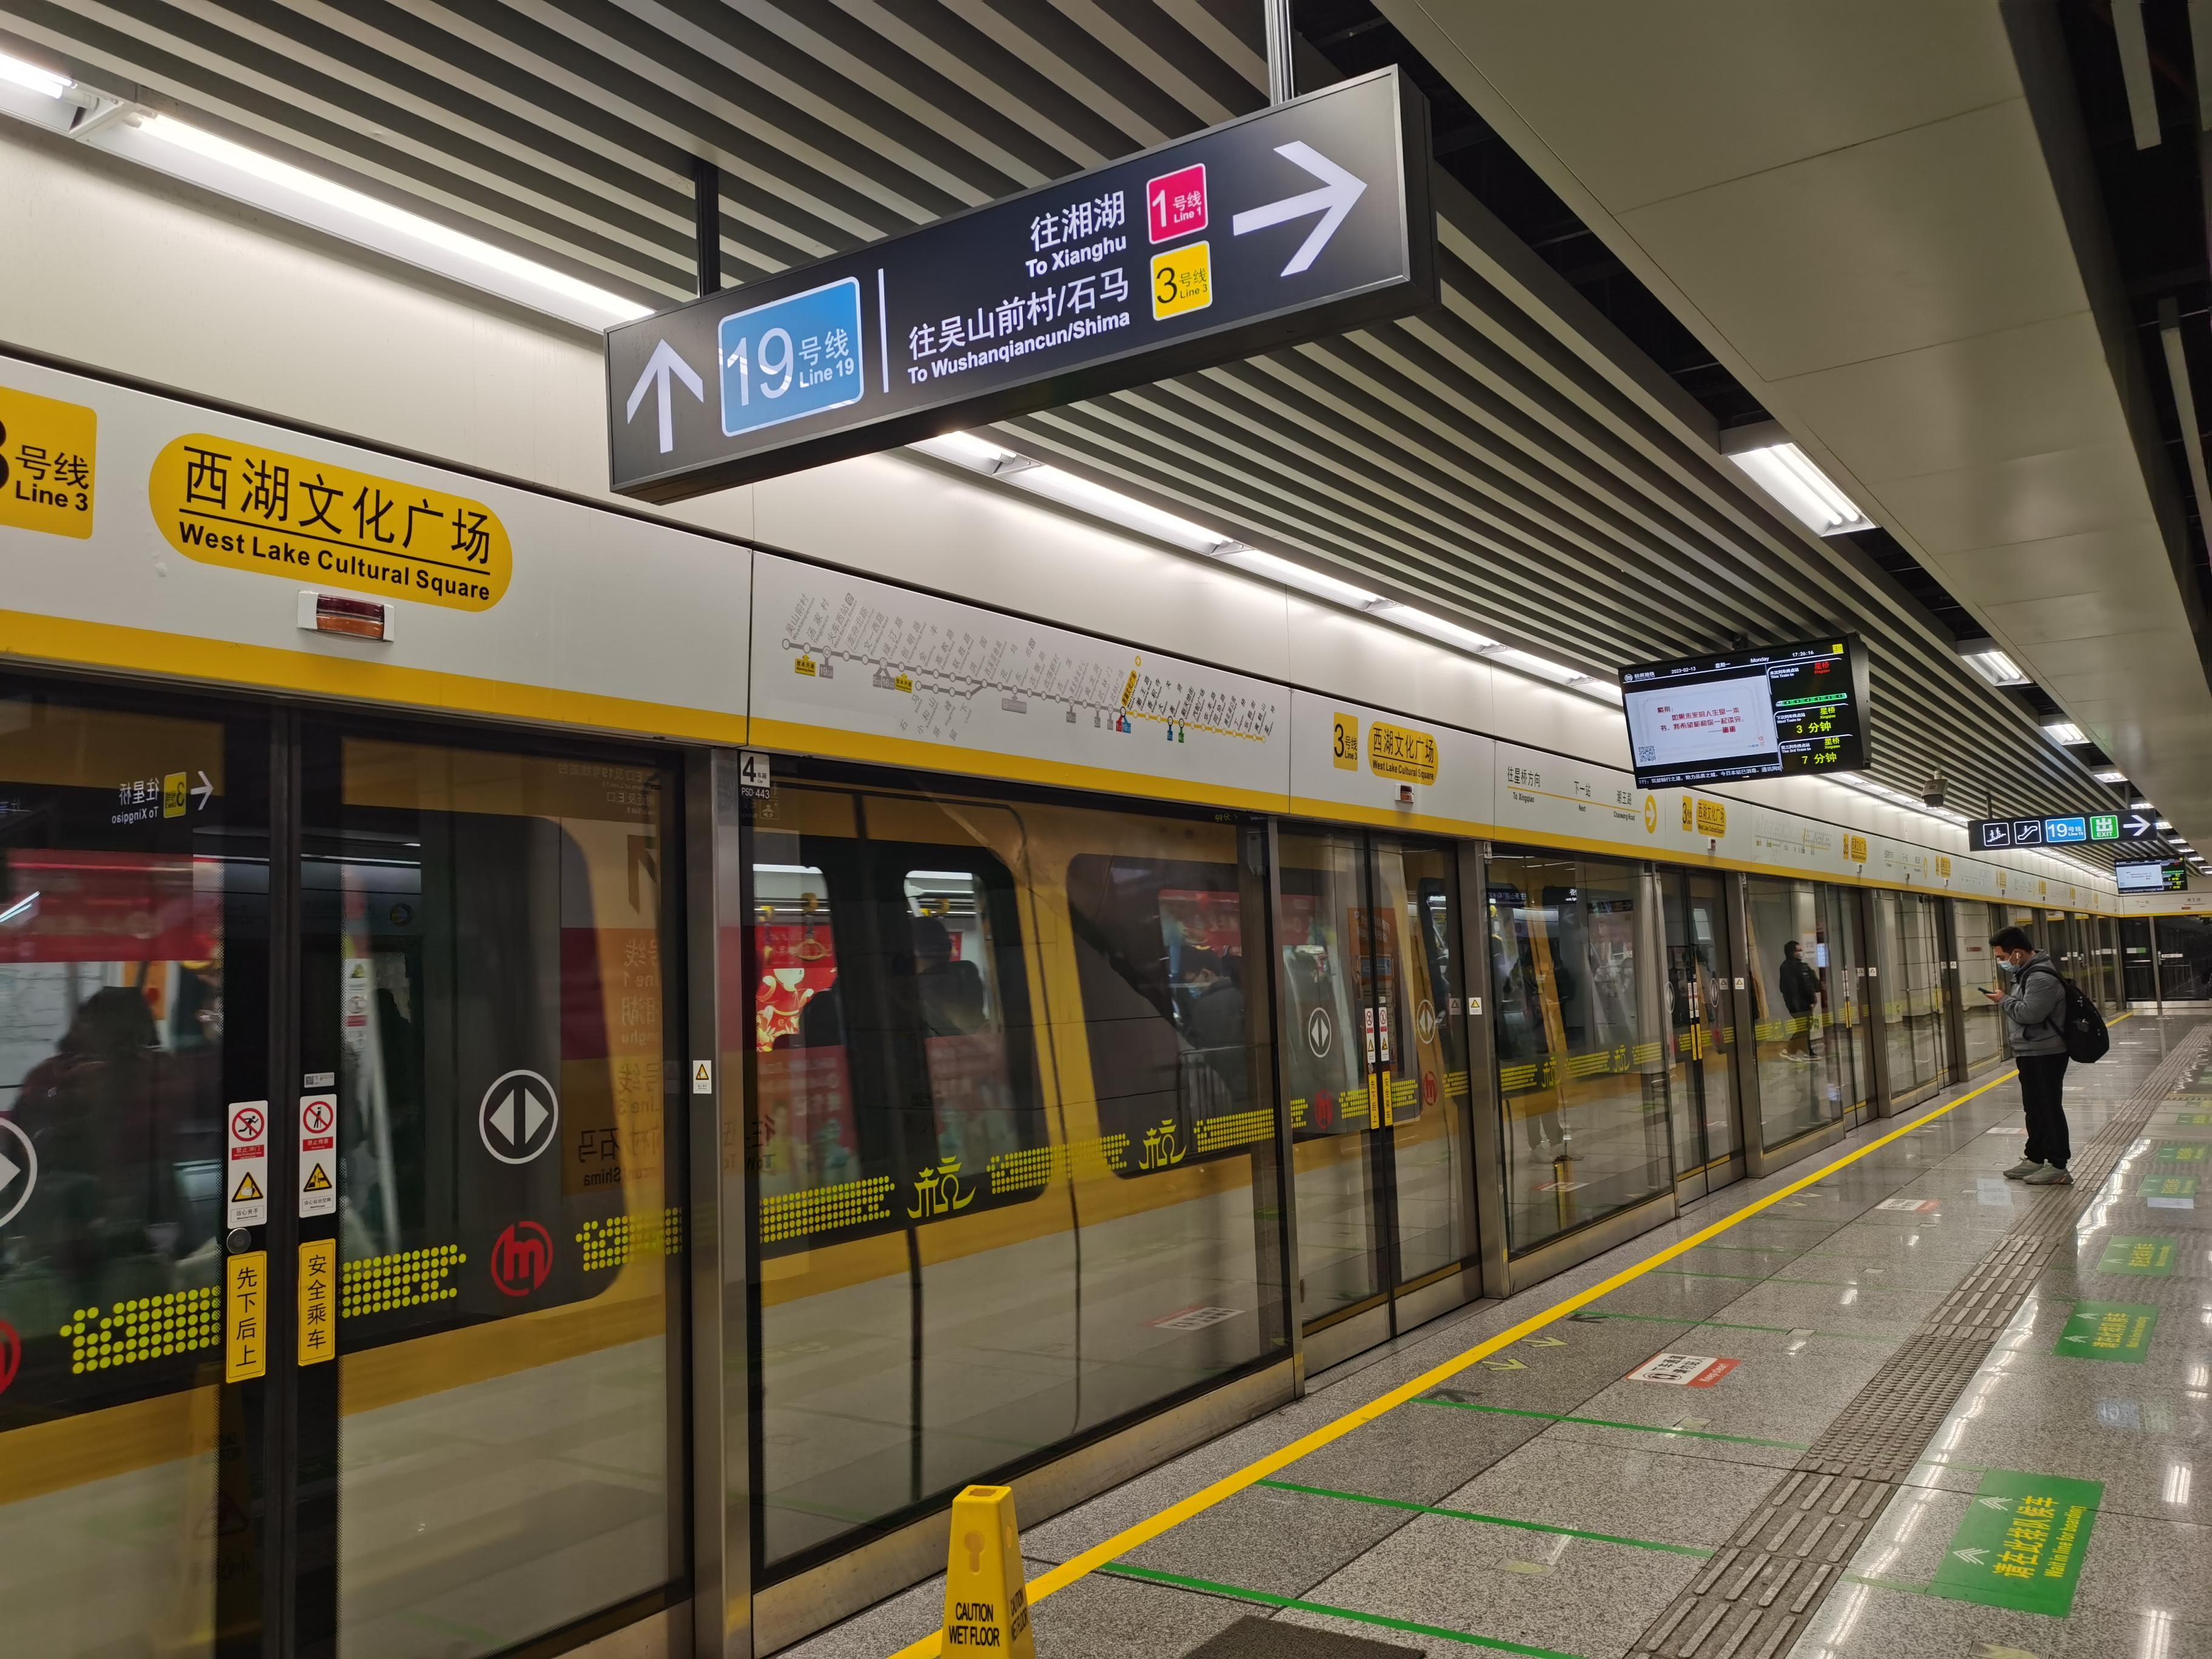 韩东阳 的想法: 杭州地铁同台换乘介绍的上篇即将发布 